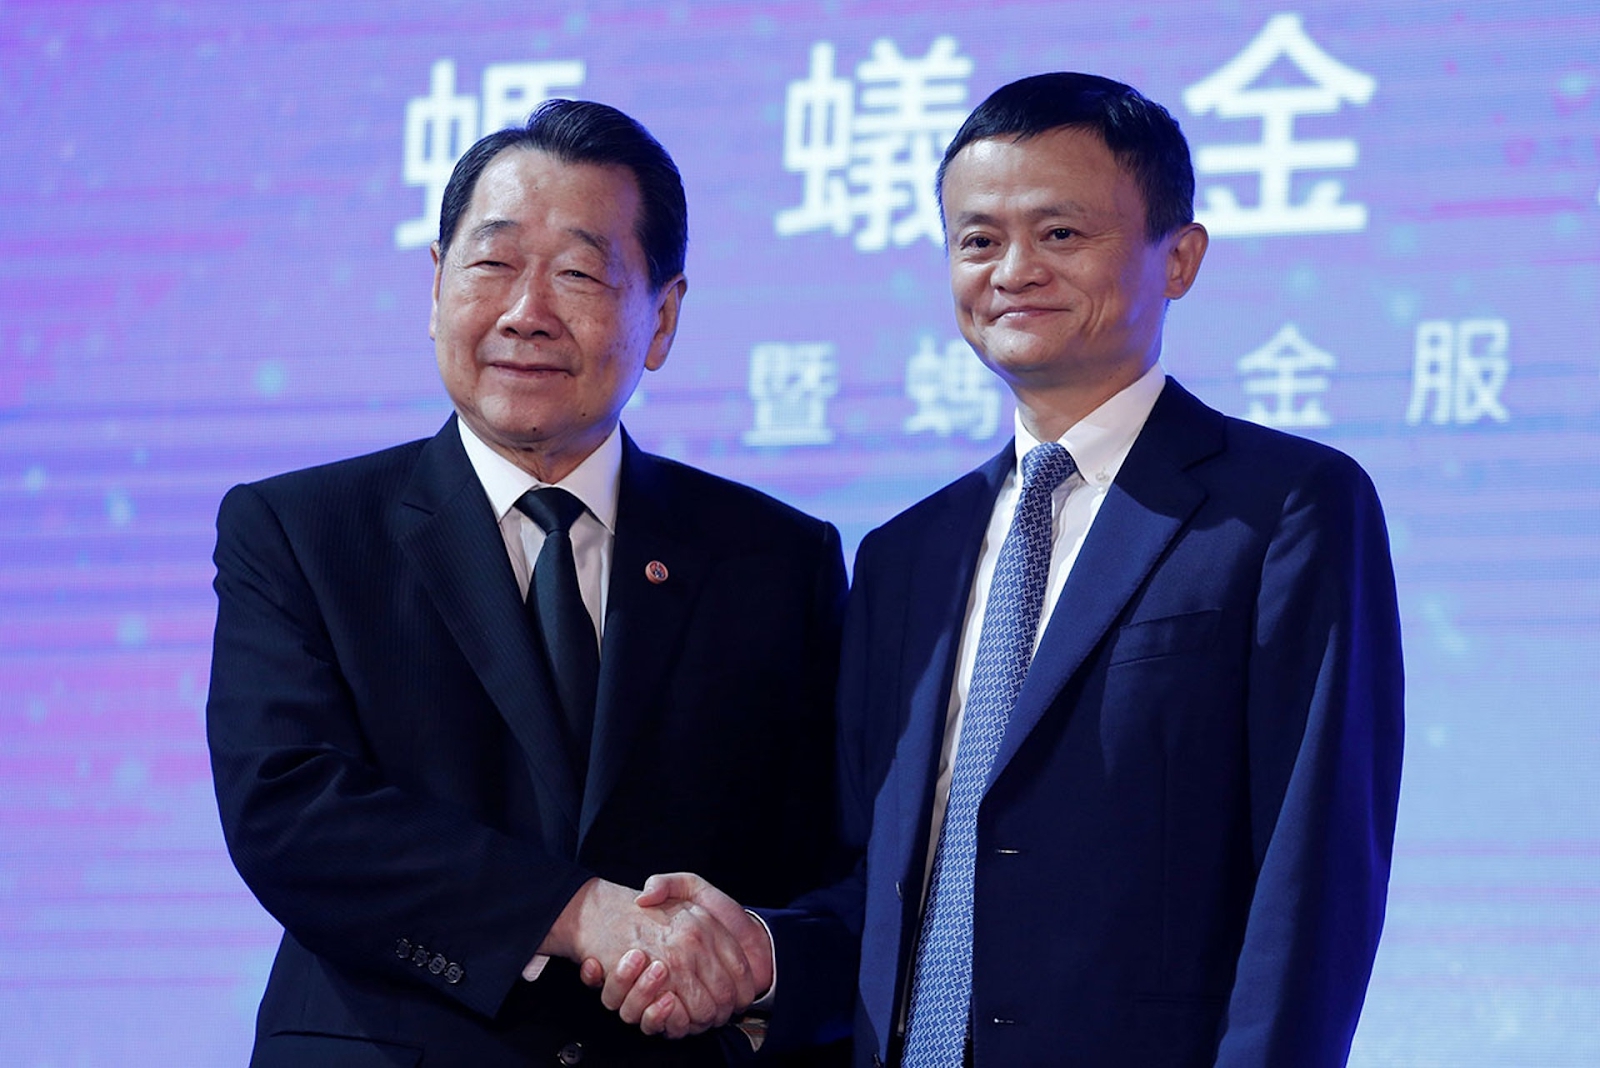 Vị tỷ phú Đông Nam Á quyền lực vừa mới gặp gỡ Jack Ma tại Hong Kong (Trung Quốc): Hóa ra là cái tên quen thuộc tại Việt Nam - Ảnh 3.